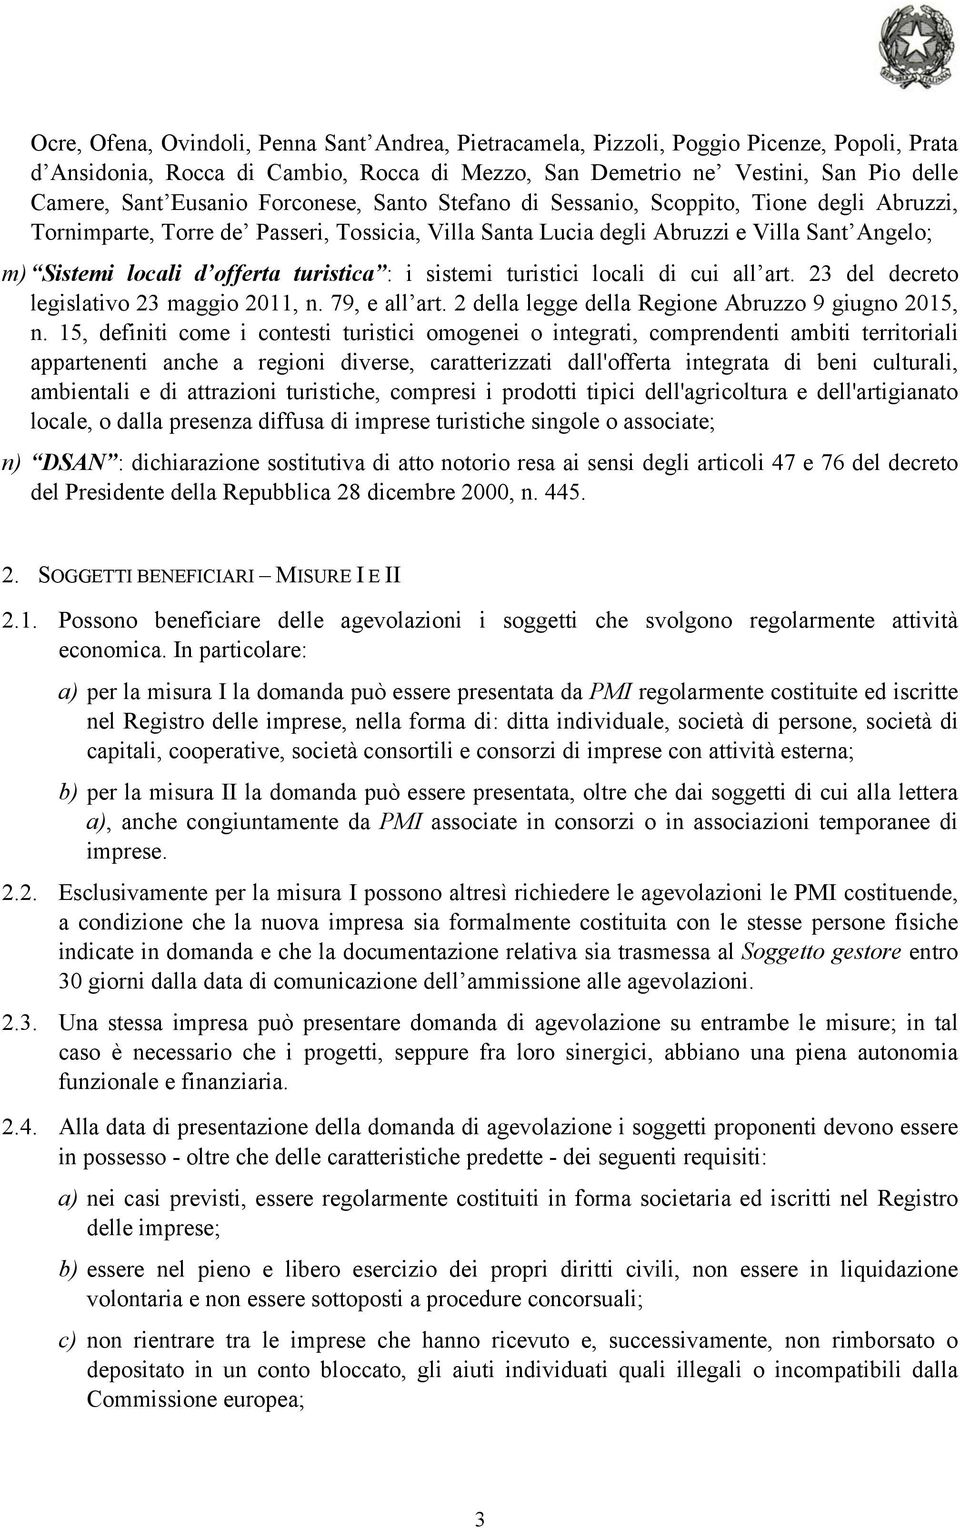 turistica : i sistemi turistici locali di cui all art. 23 del decreto legislativo 23 maggio 2011, n. 79, e all art. 2 della legge della Regione Abruzzo 9 giugno 2015, n.